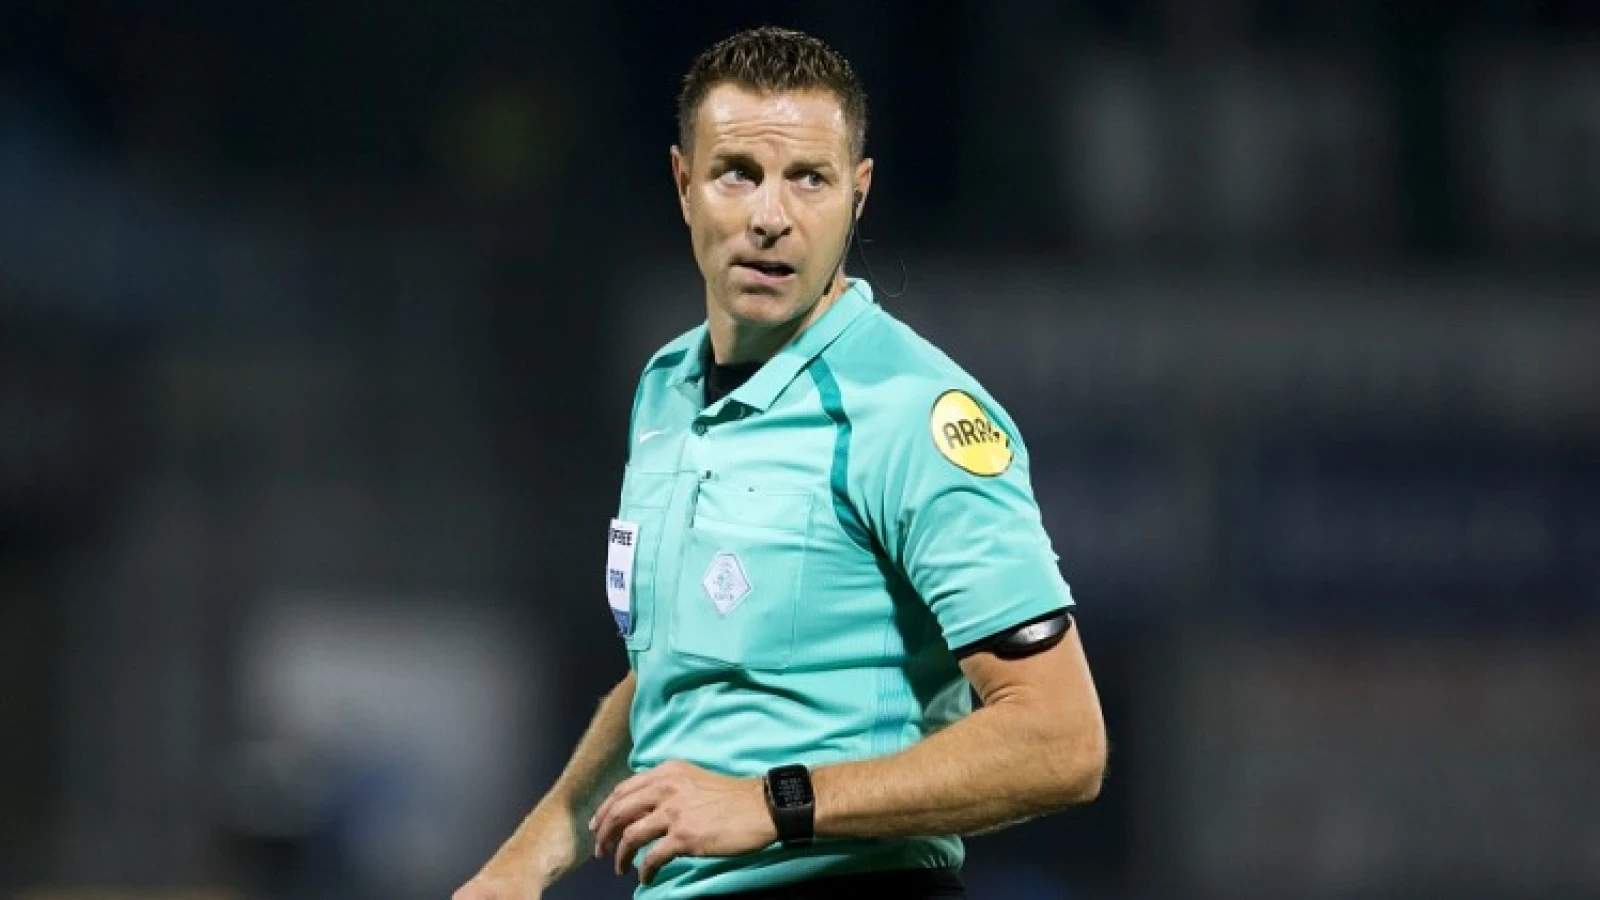 KNVB maakt scheidsrechter bekend voor thuiswedstrijd tegen Vitesse